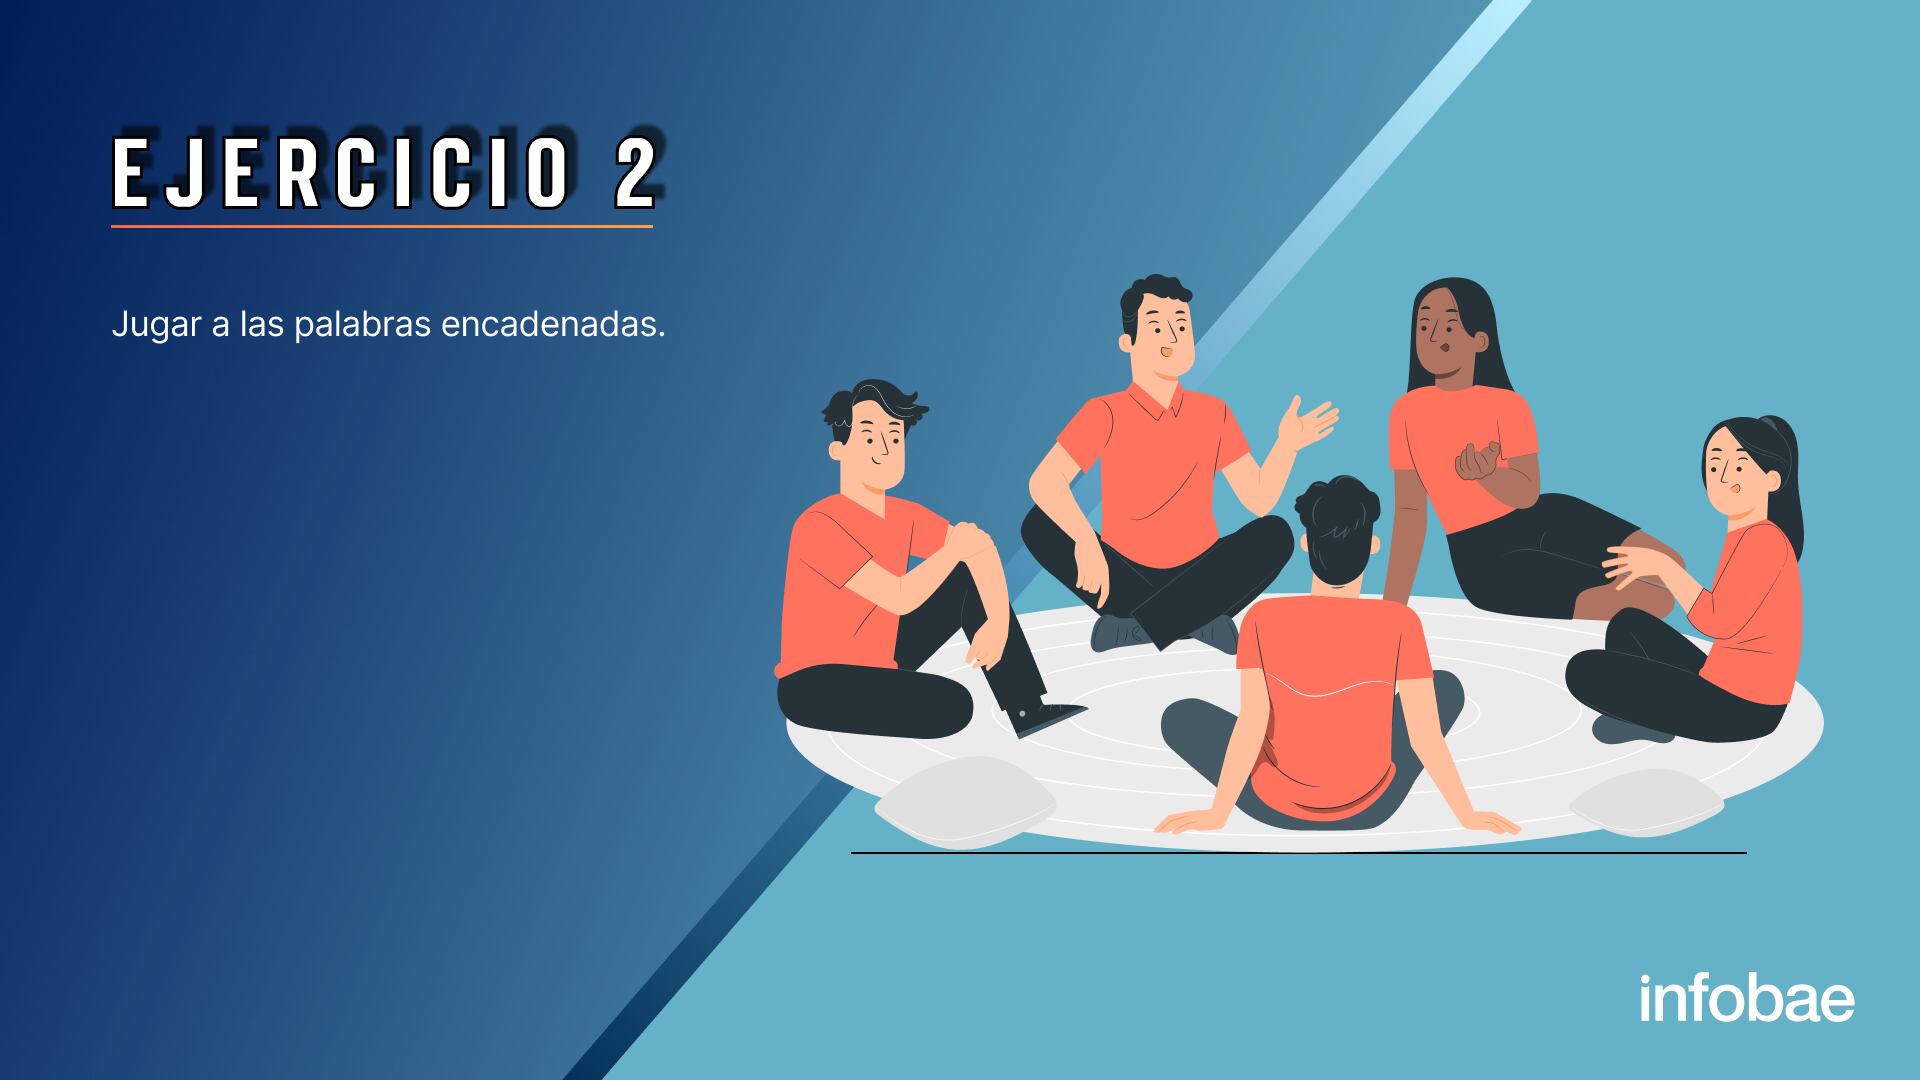 EJERCICIOS INECO 10/5 para la nota: 5 ejercicios útiles para estimular el lenguaje